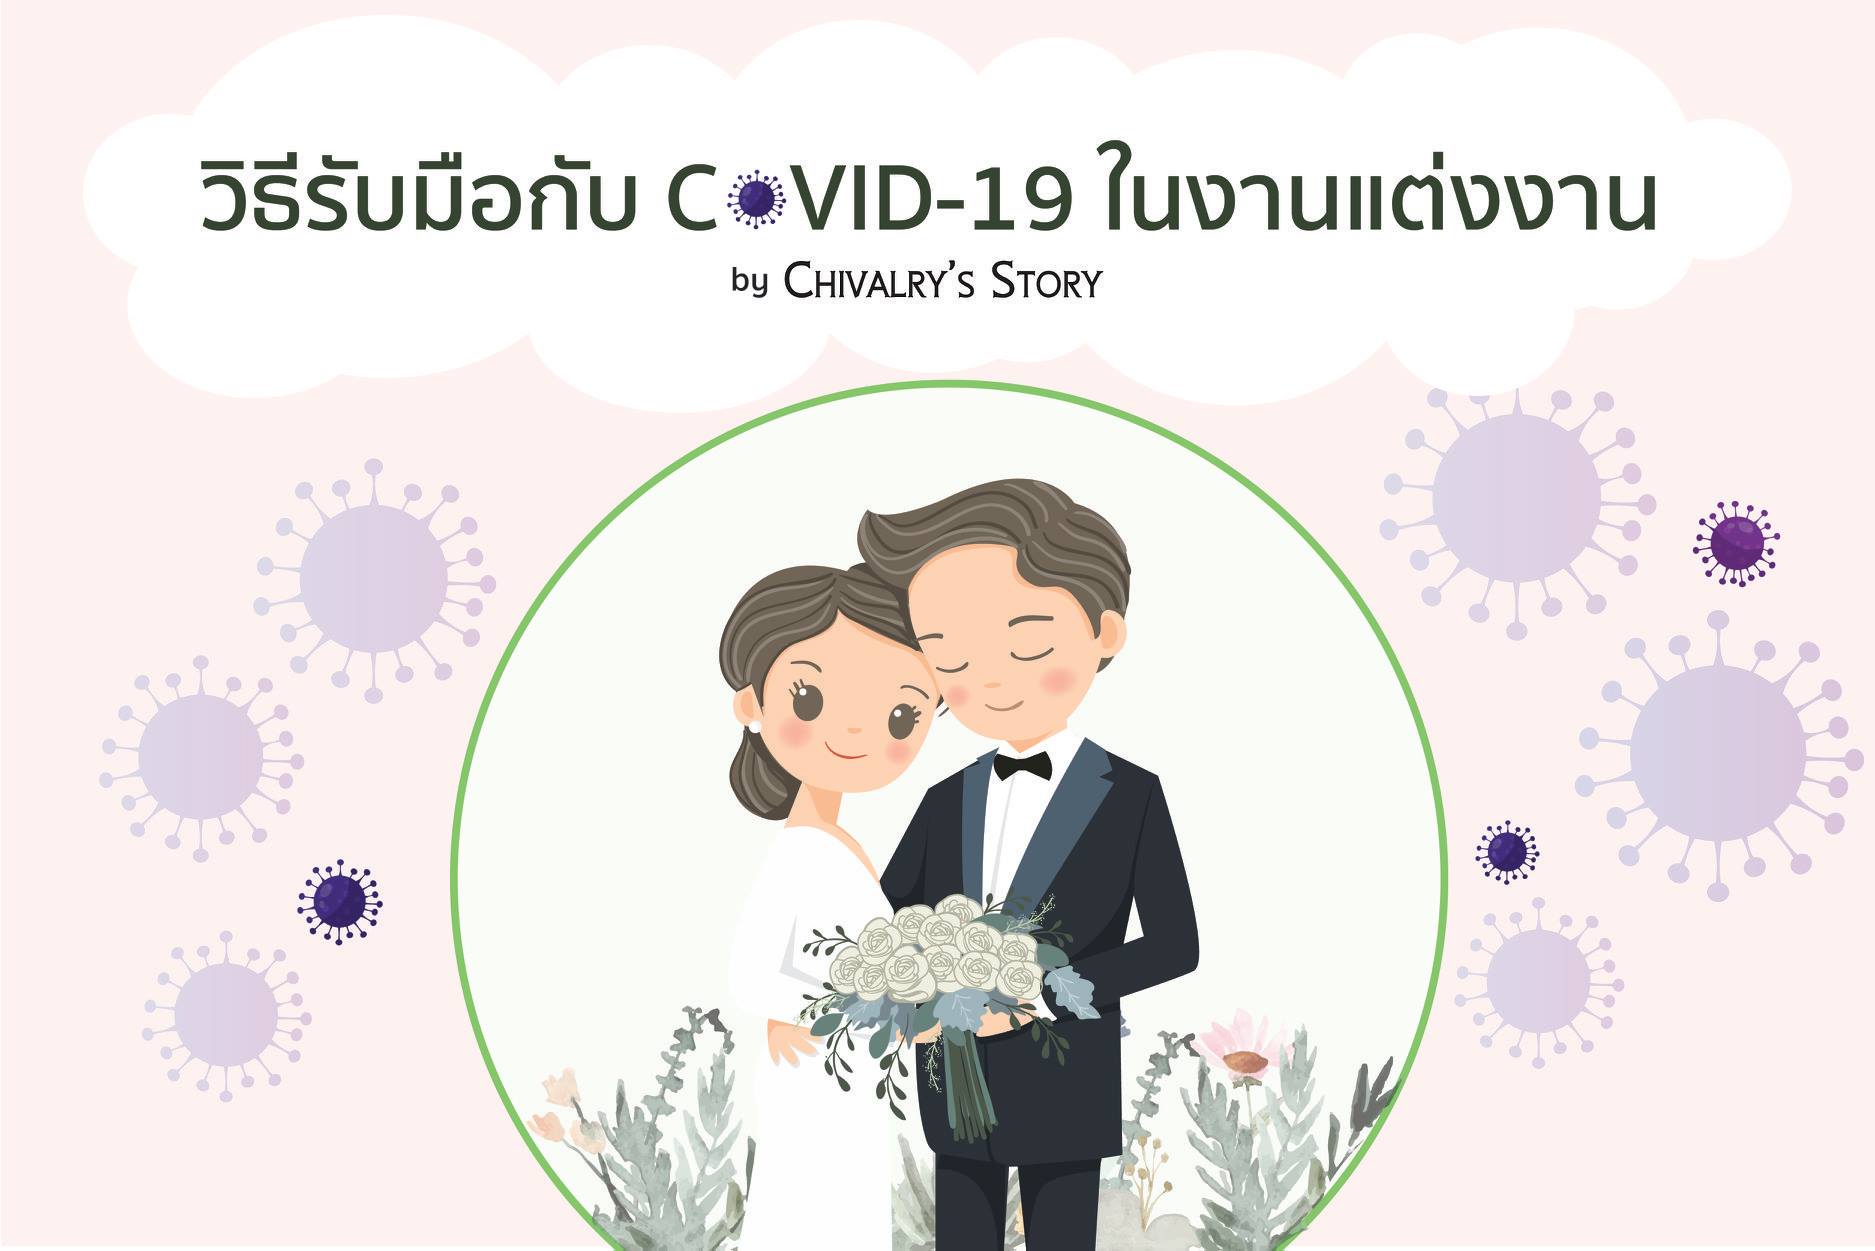 งานแต่งงานก็ต้องจัด เพื่อนแต่งงานก็ต้องไป ไวรัส COVID-19 ก็ต้องกลัว จะทำยังไงดี? 